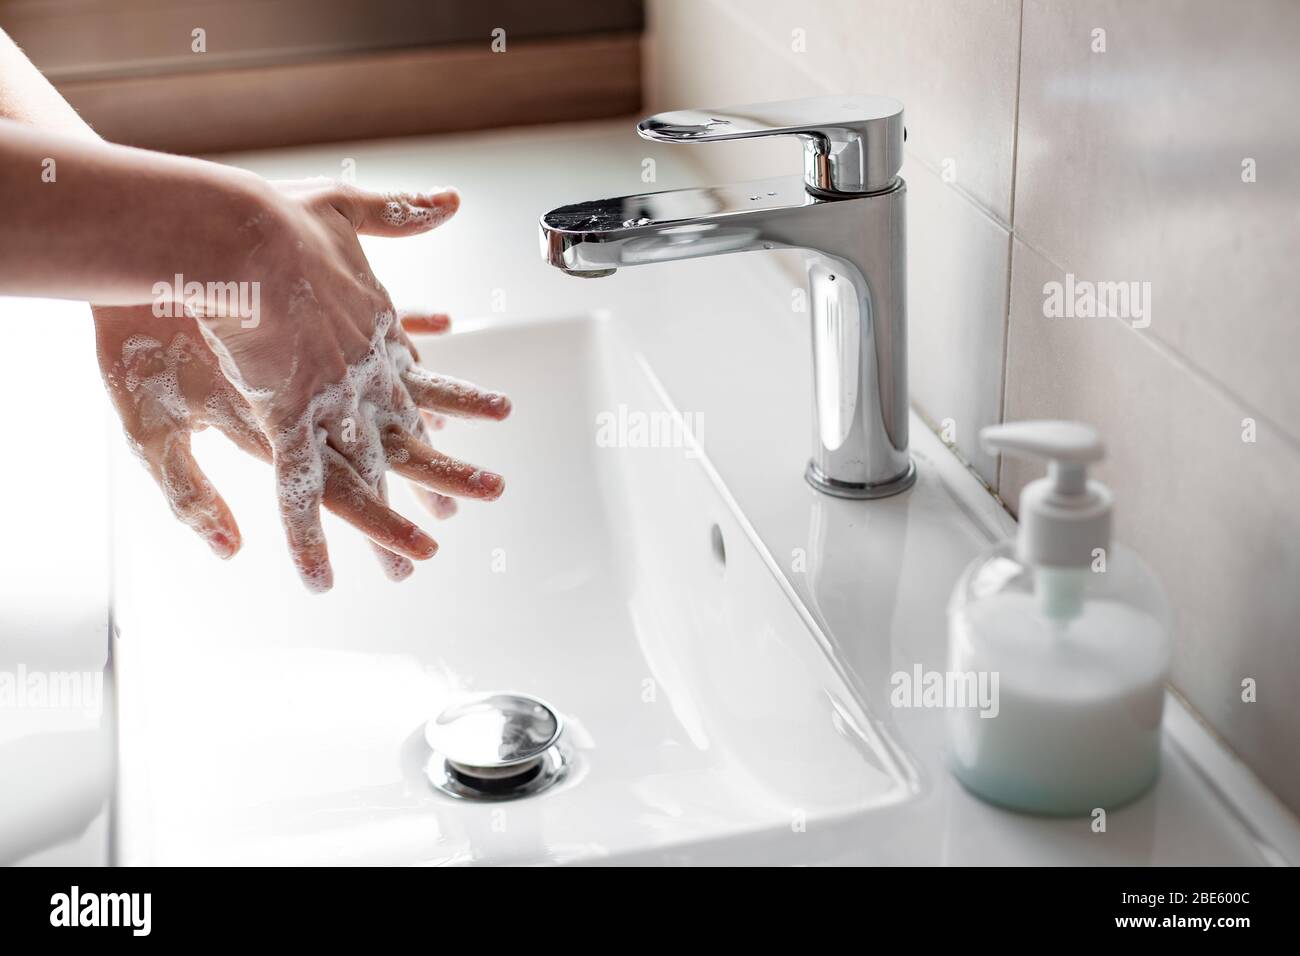 Lavare le mani con sapone per prevenire l'infezione da coronavirus Foto Stock